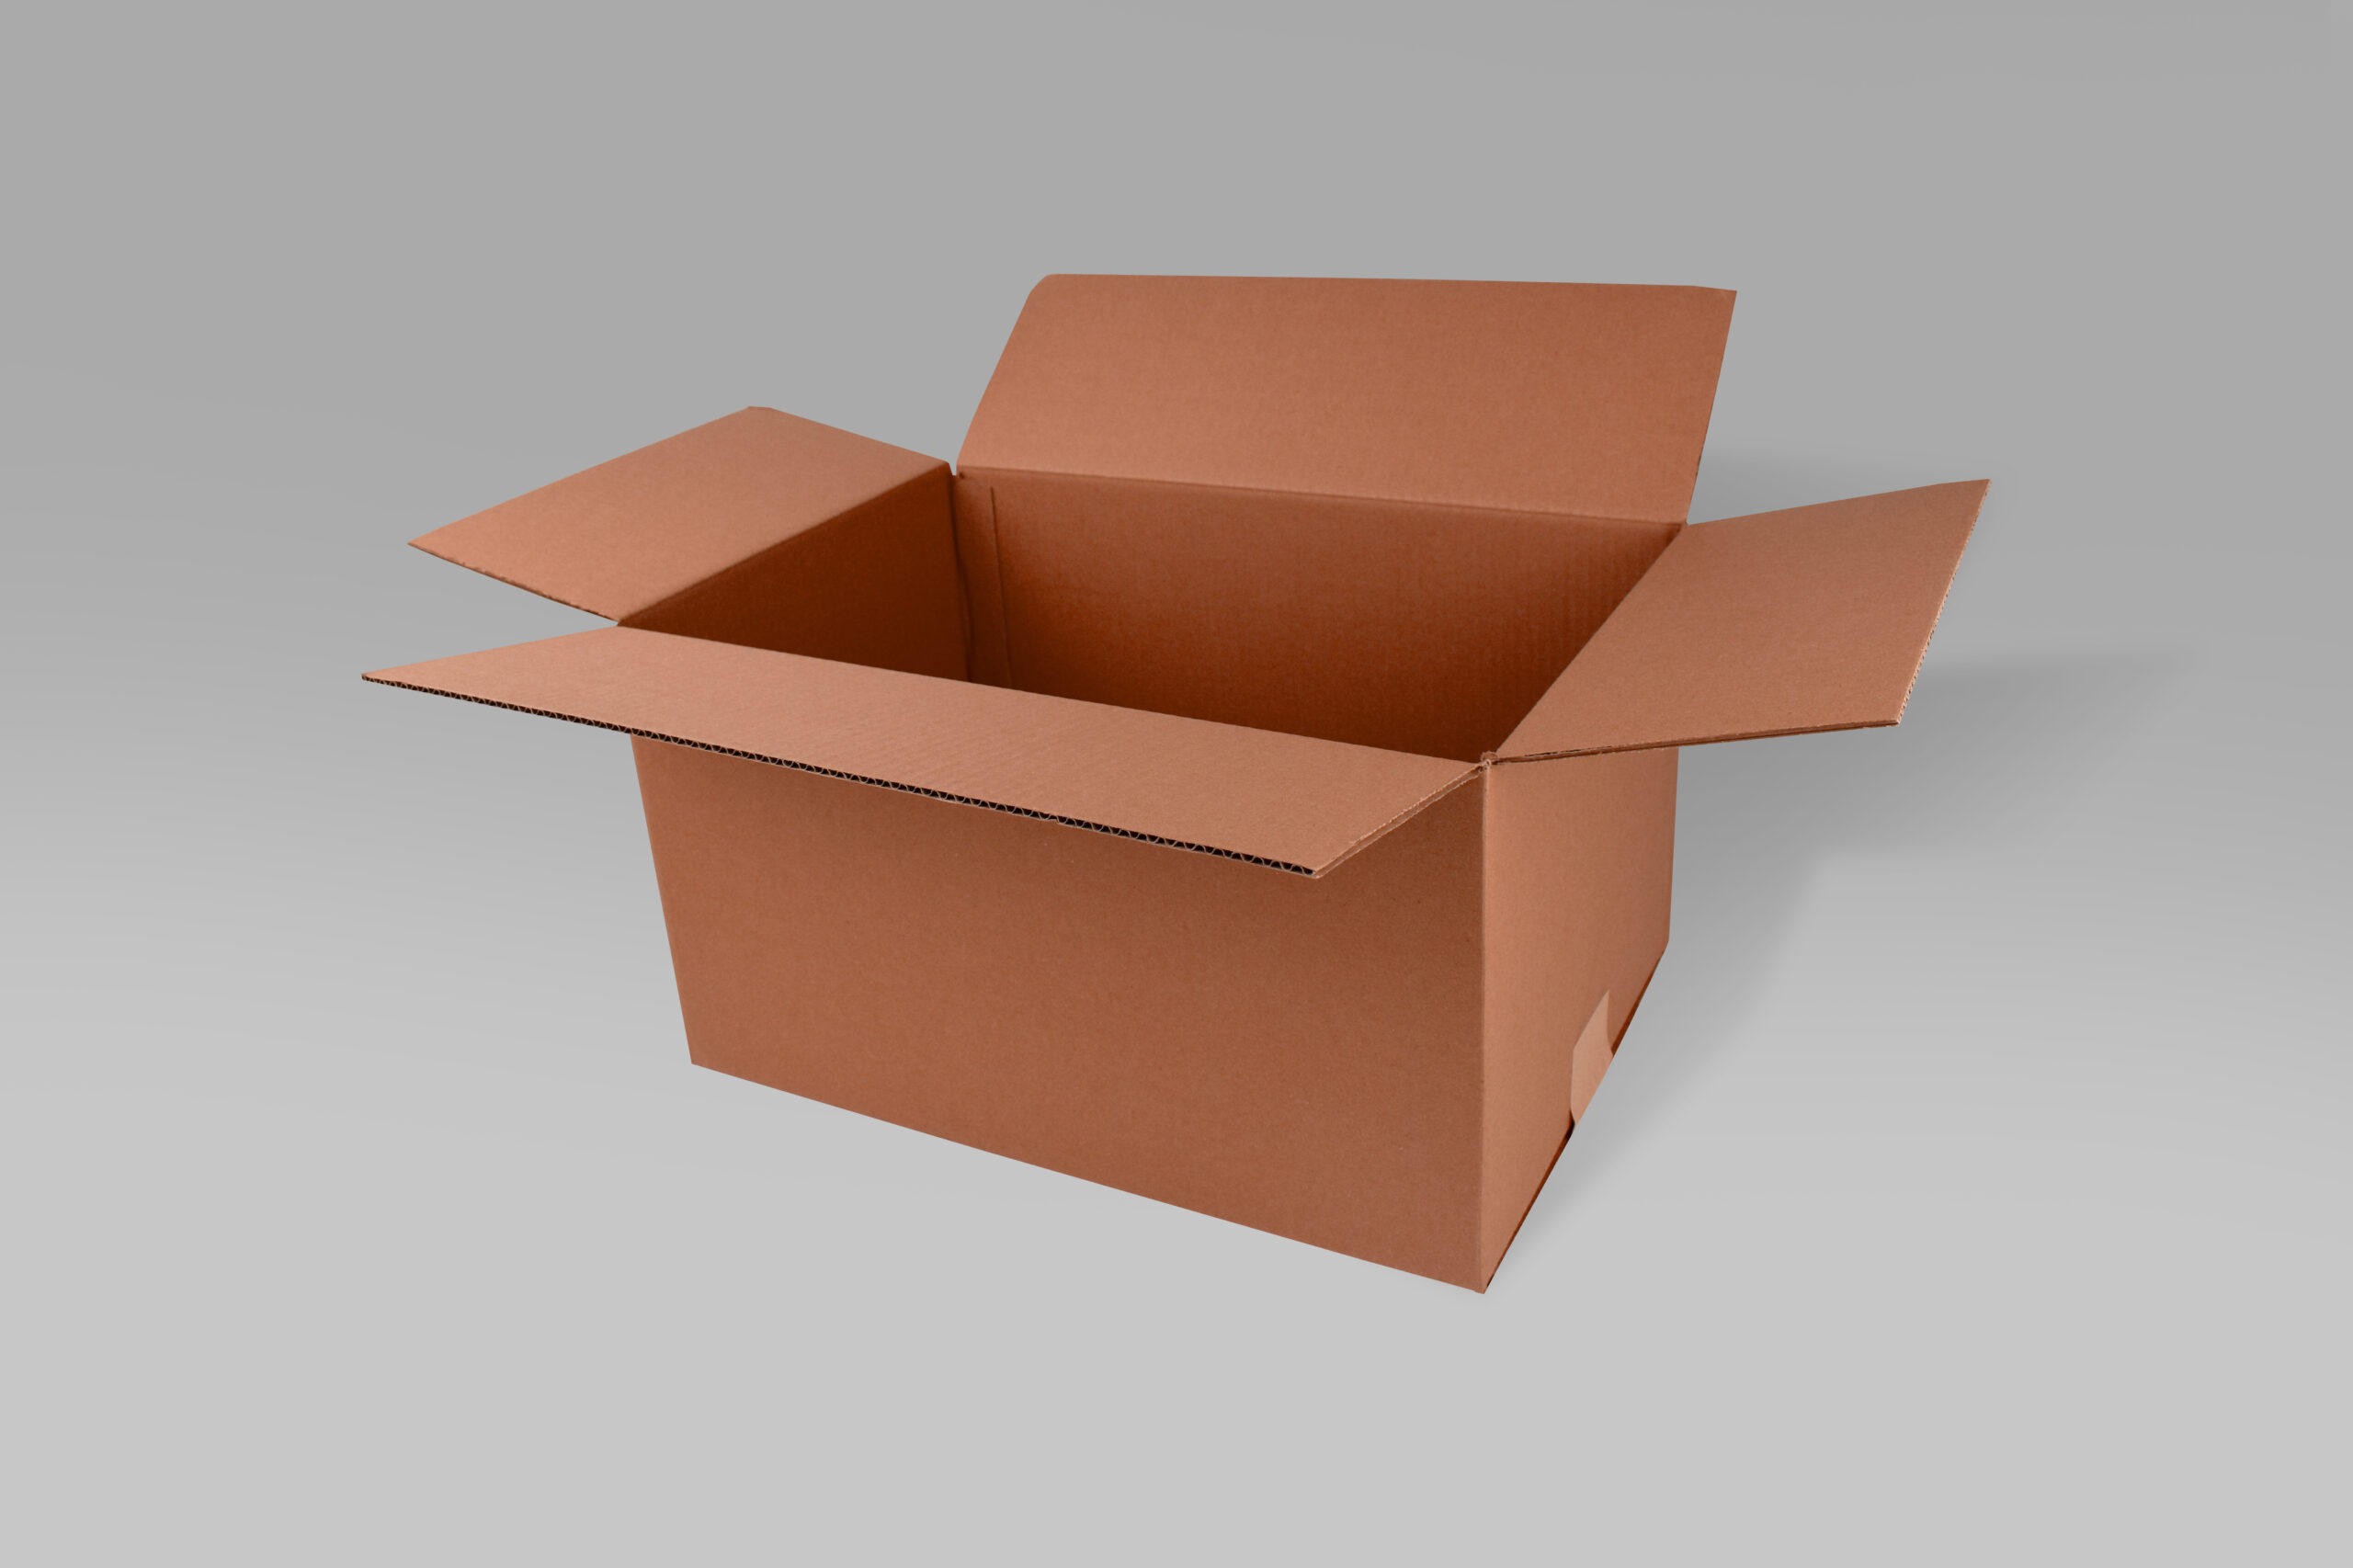 Caja St 45.0 X 30.0 X 26.0 cm – 10 Piezas